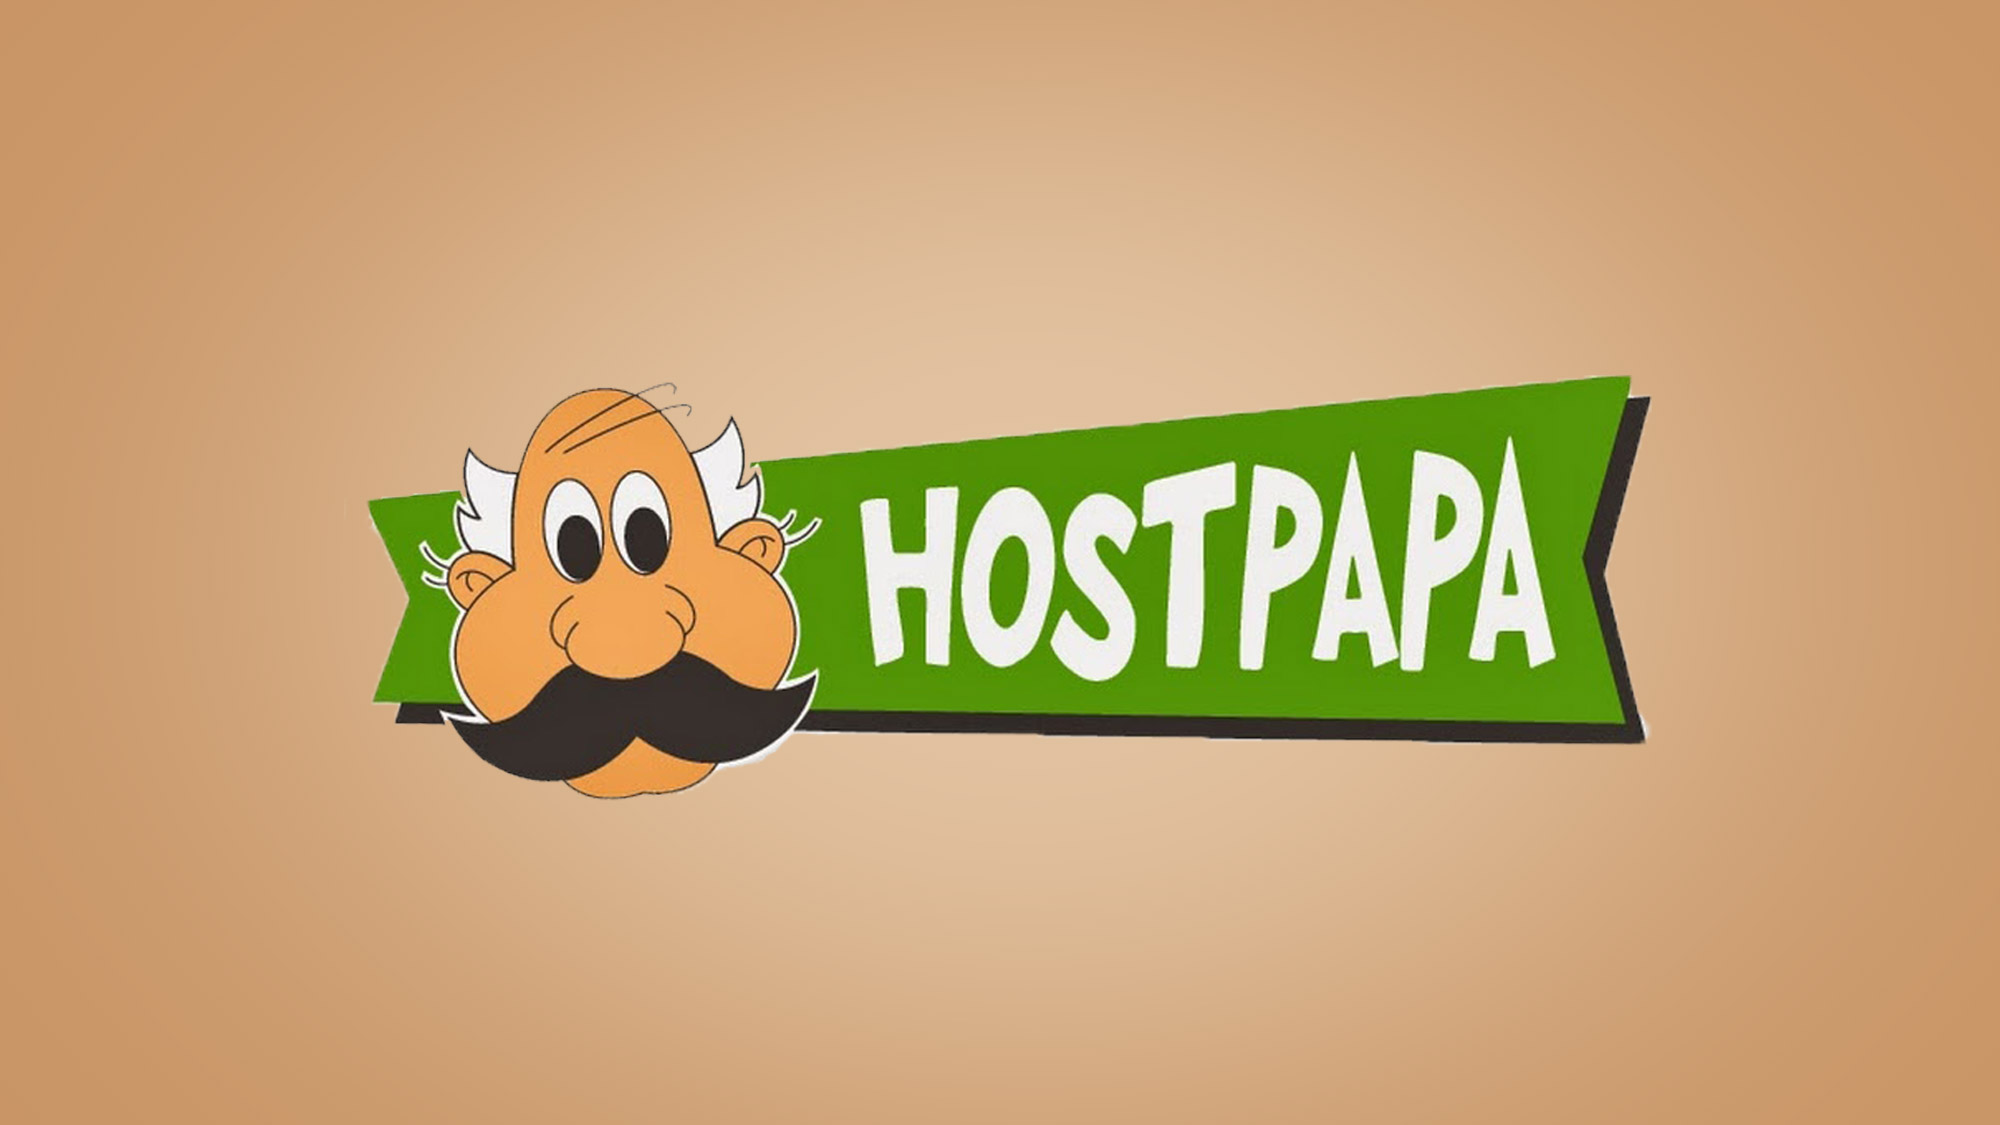 hostpapa - full service review | tom's guide